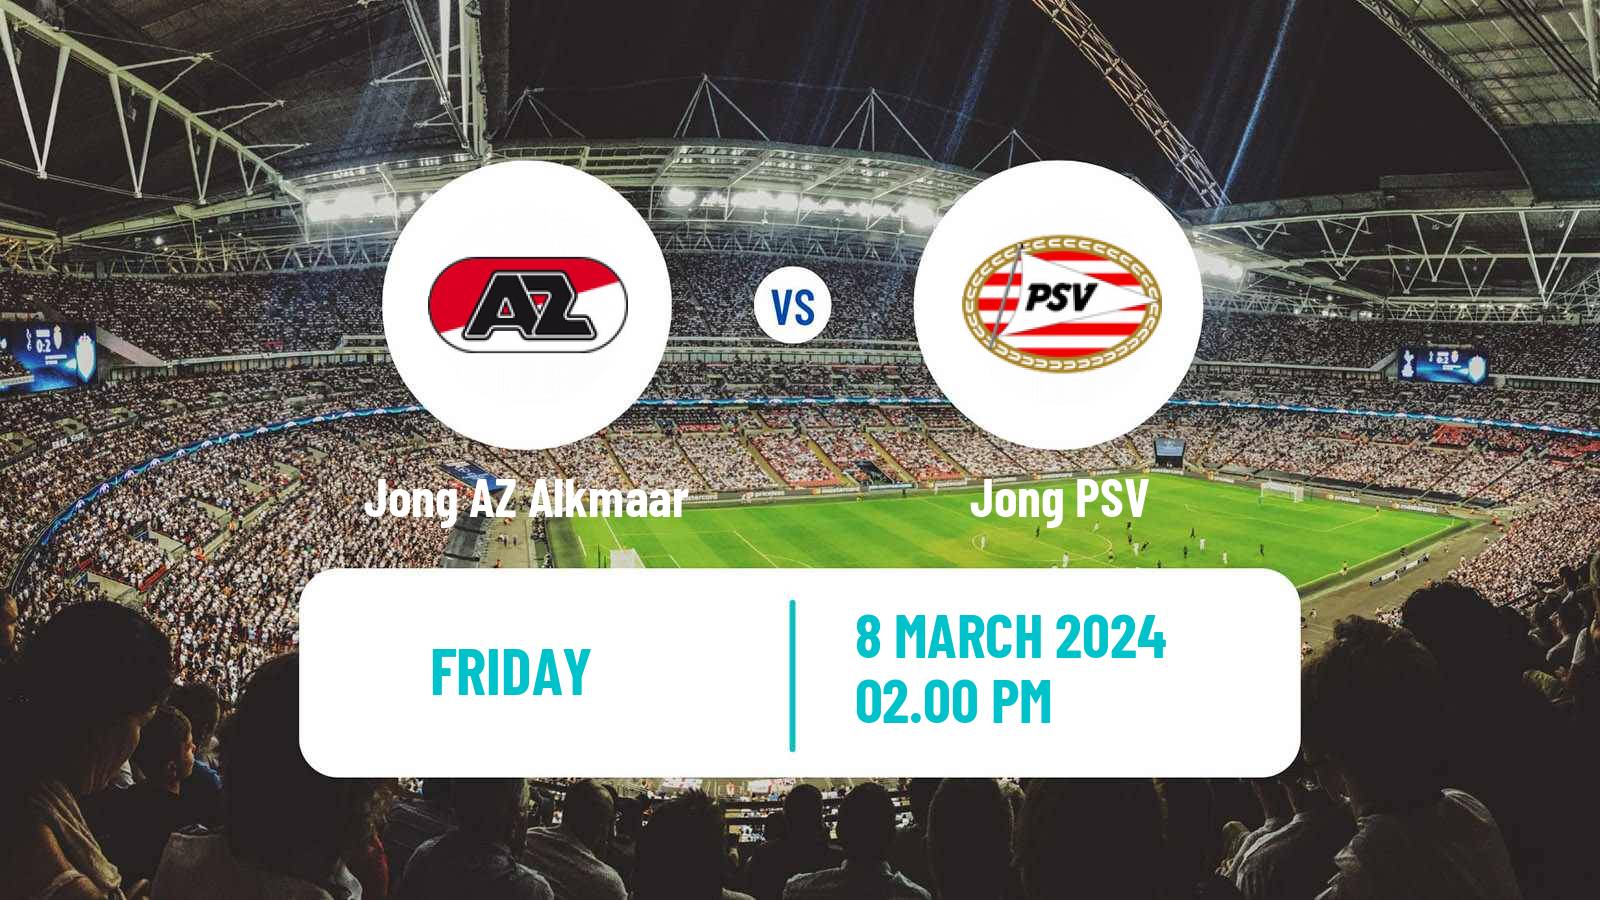 Soccer Dutch Eerste Divisie Jong AZ Alkmaar - Jong PSV